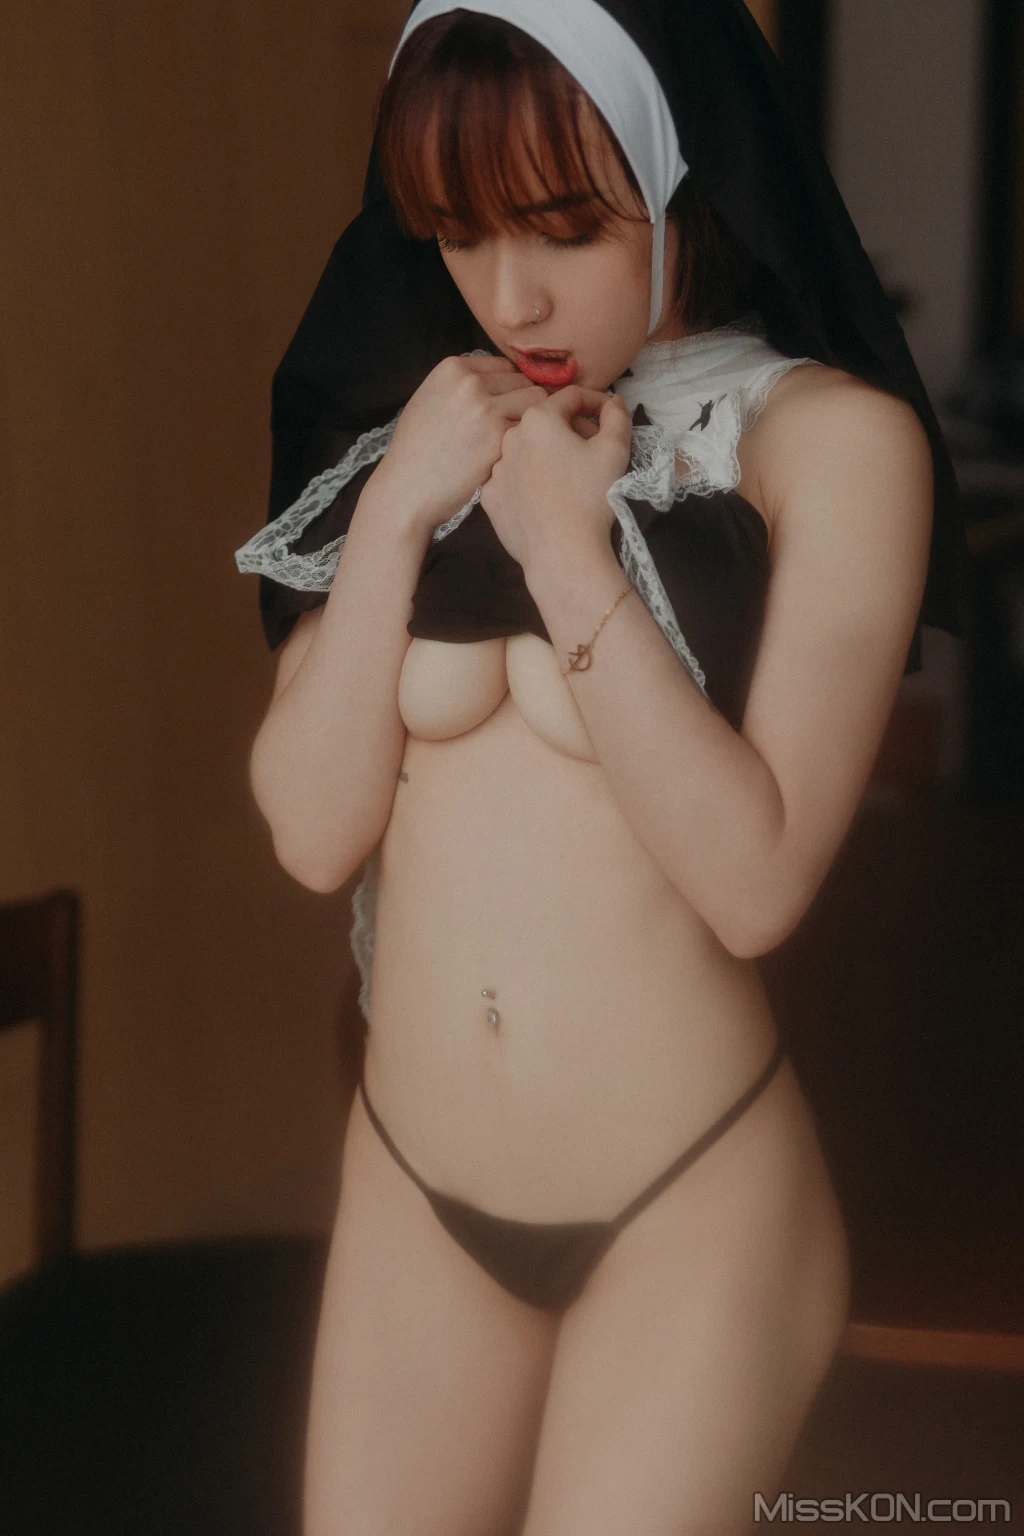 [DCP snaps] Vanessa: Vol.10 Halloween Nun (78 photos)